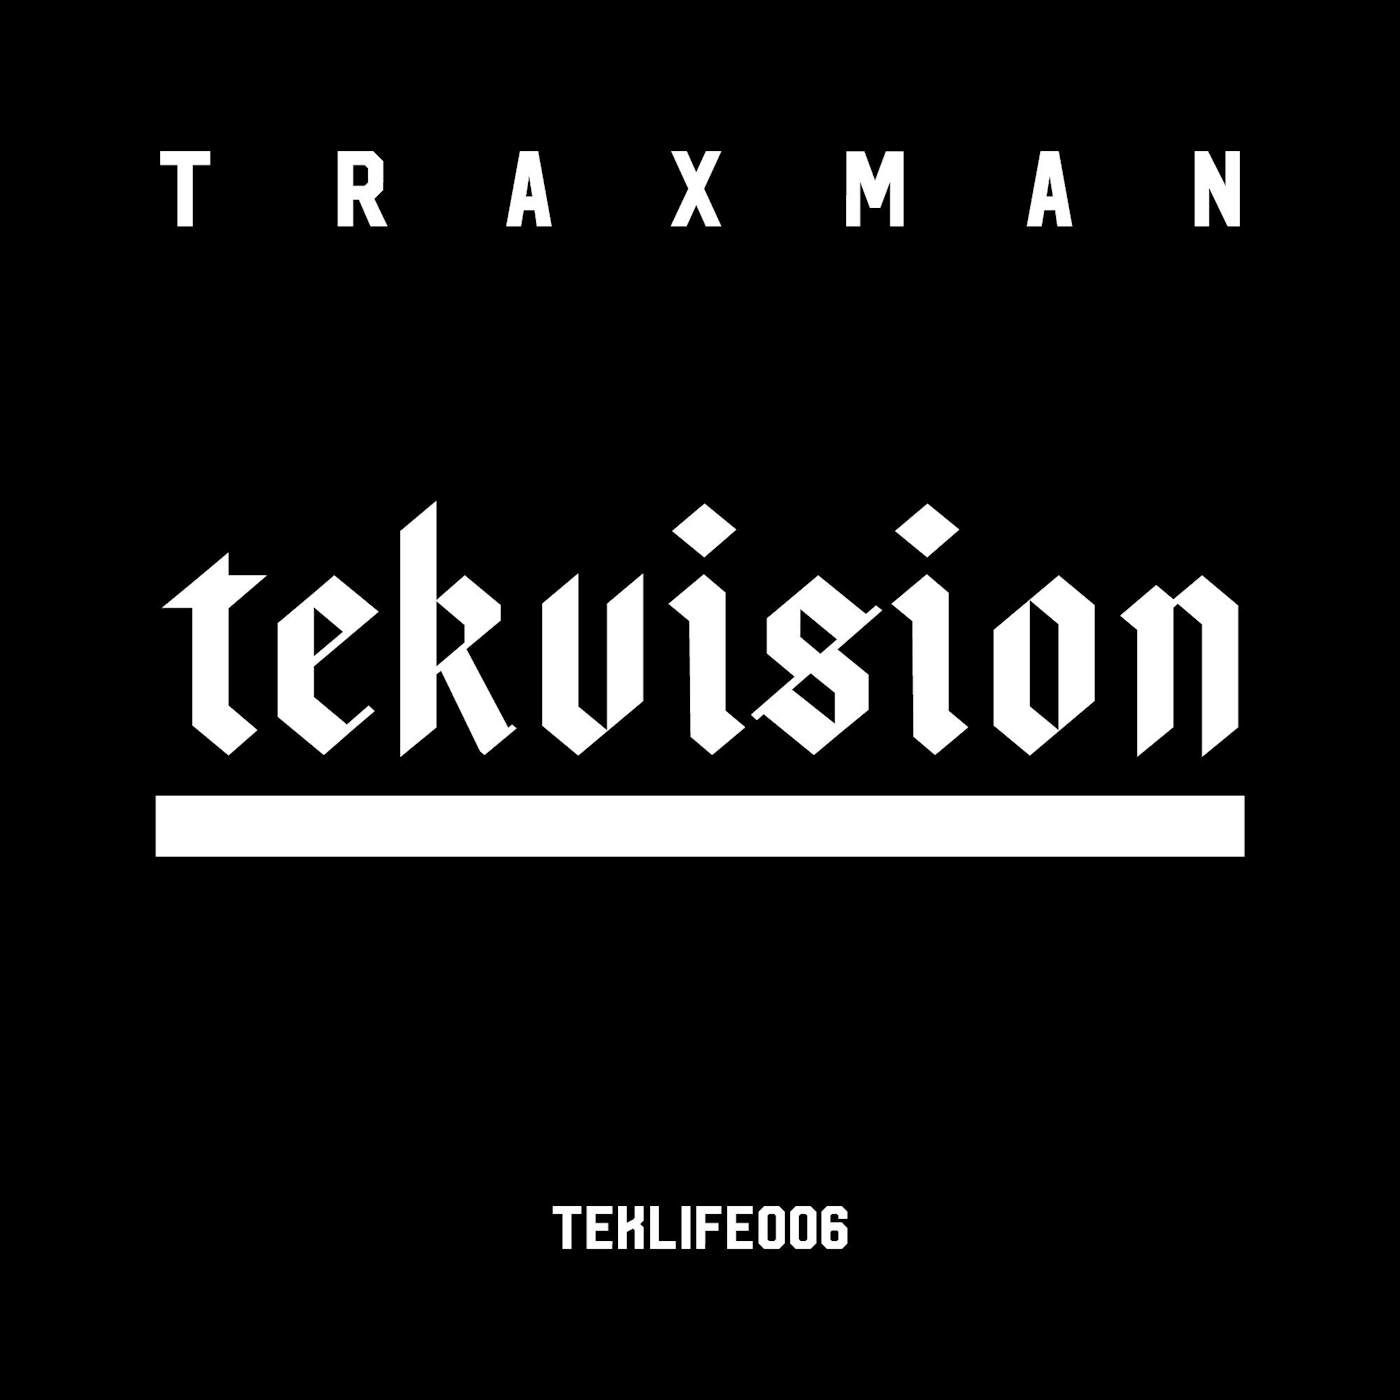 Traxman 'Tekvision' Vinyl LP Vinyl Record